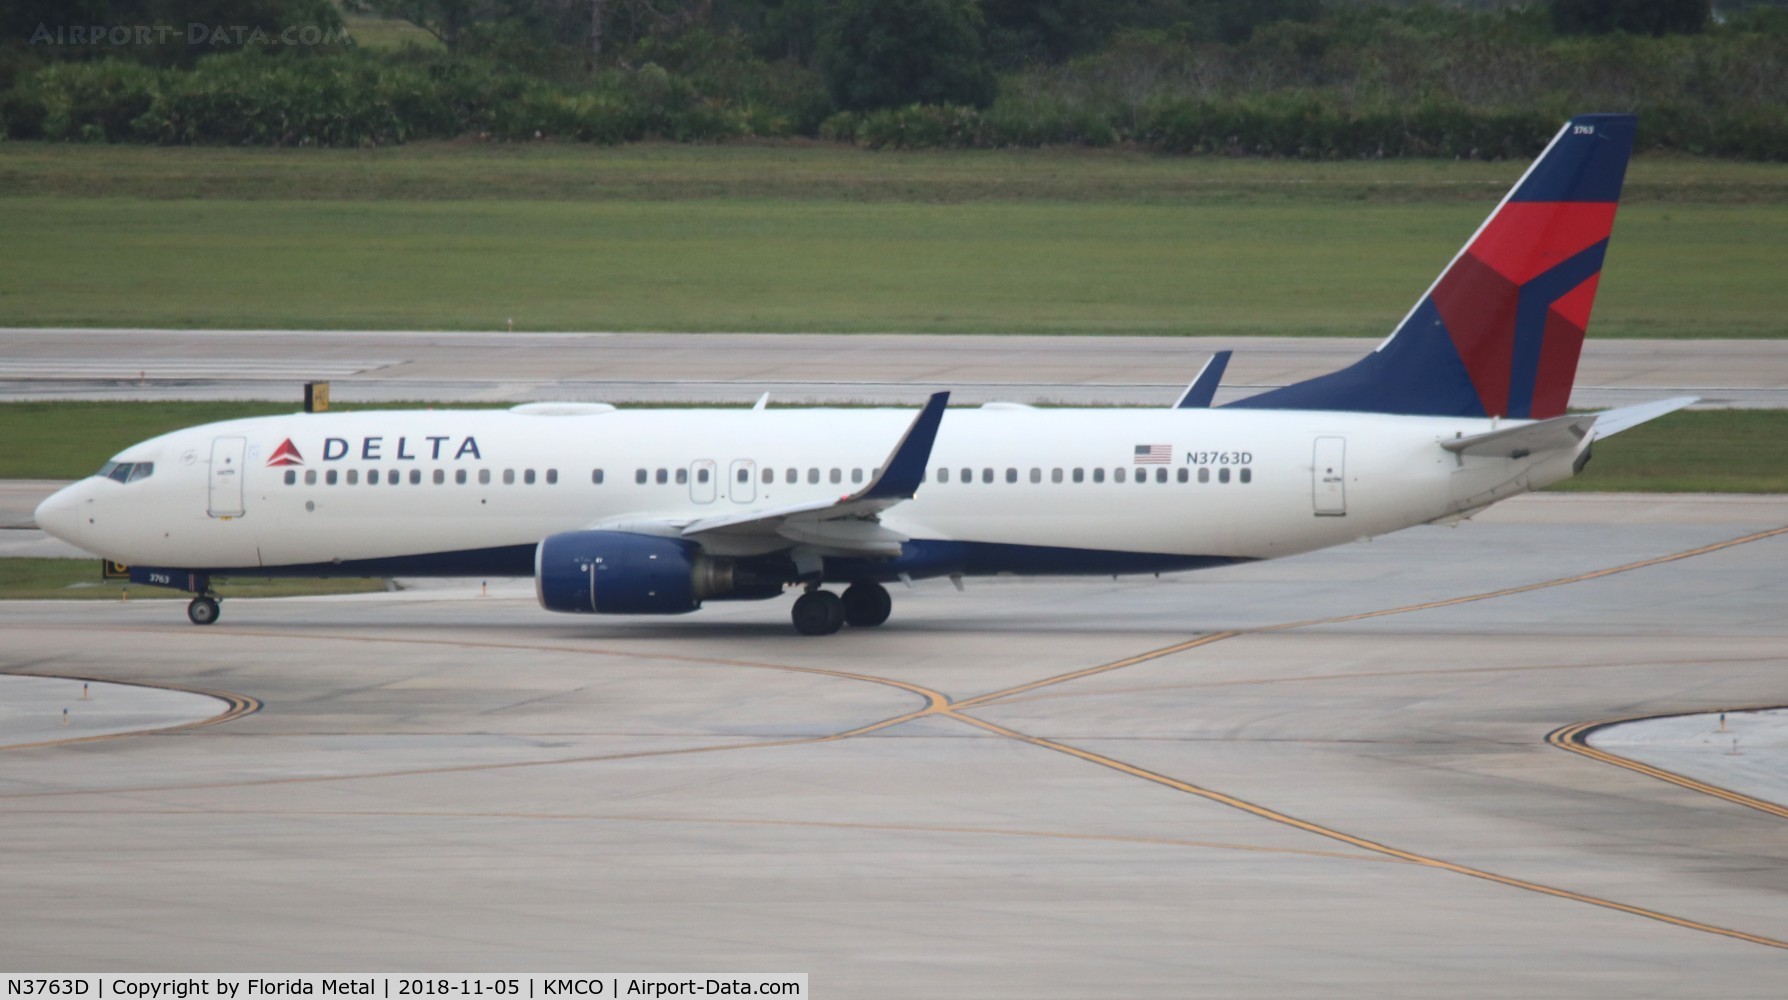 N3763D, 2001 Boeing 737-832 C/N 29629, Delta 737-832